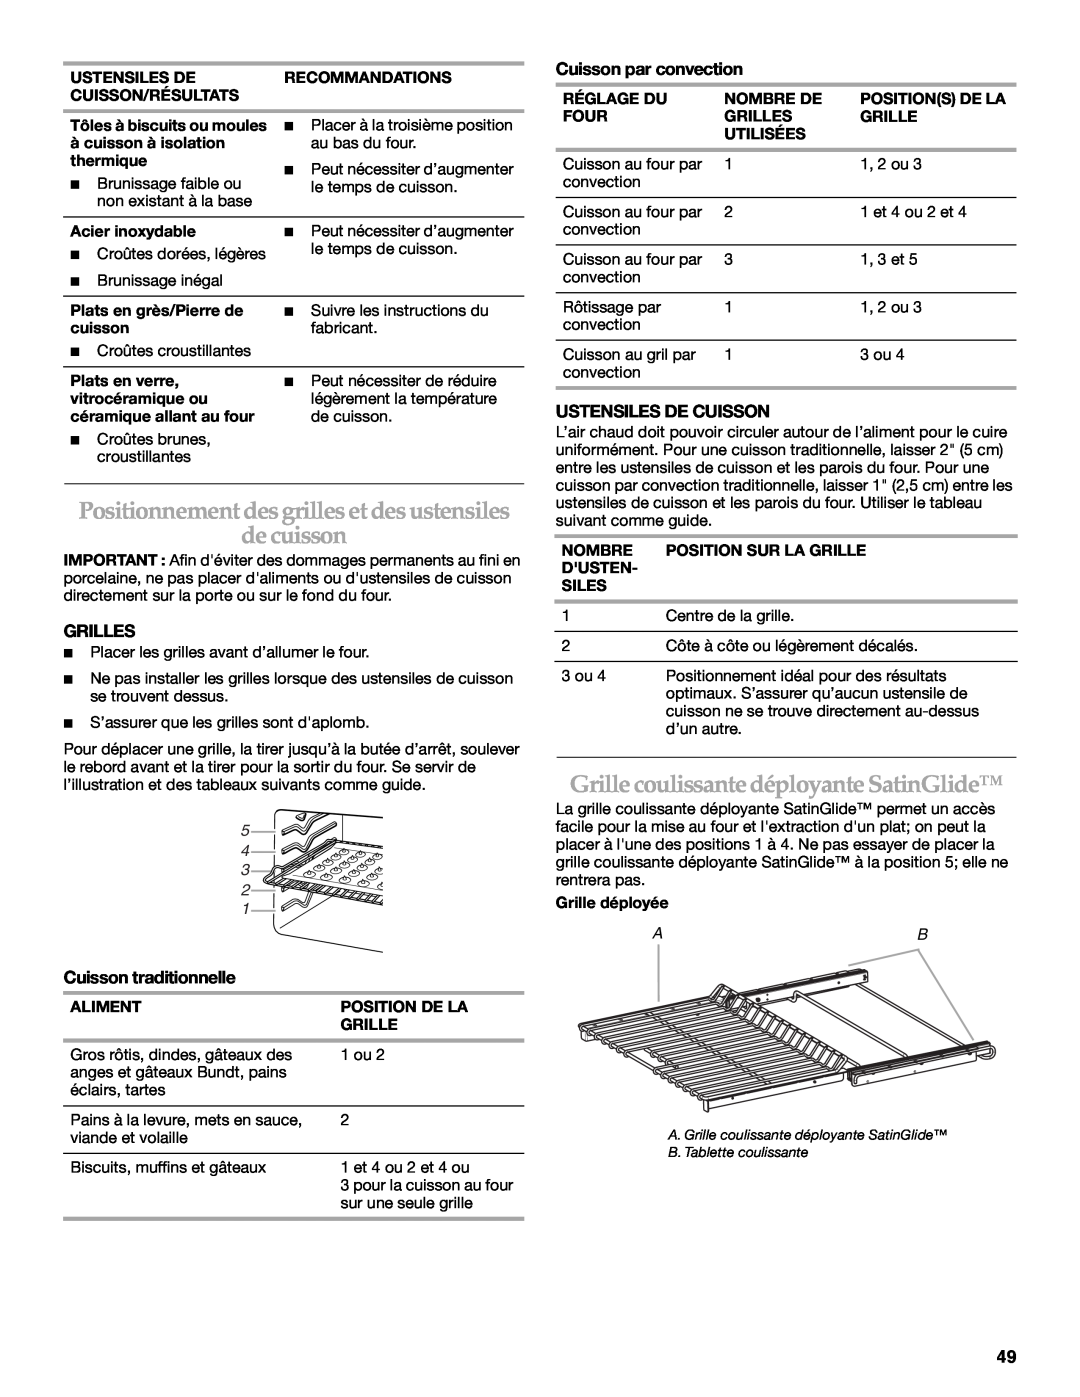 KitchenAid KDRS462 manual Positionnement des grilles et des ustensiles de cuisson, Grille coulissante déployante SatinGlide 